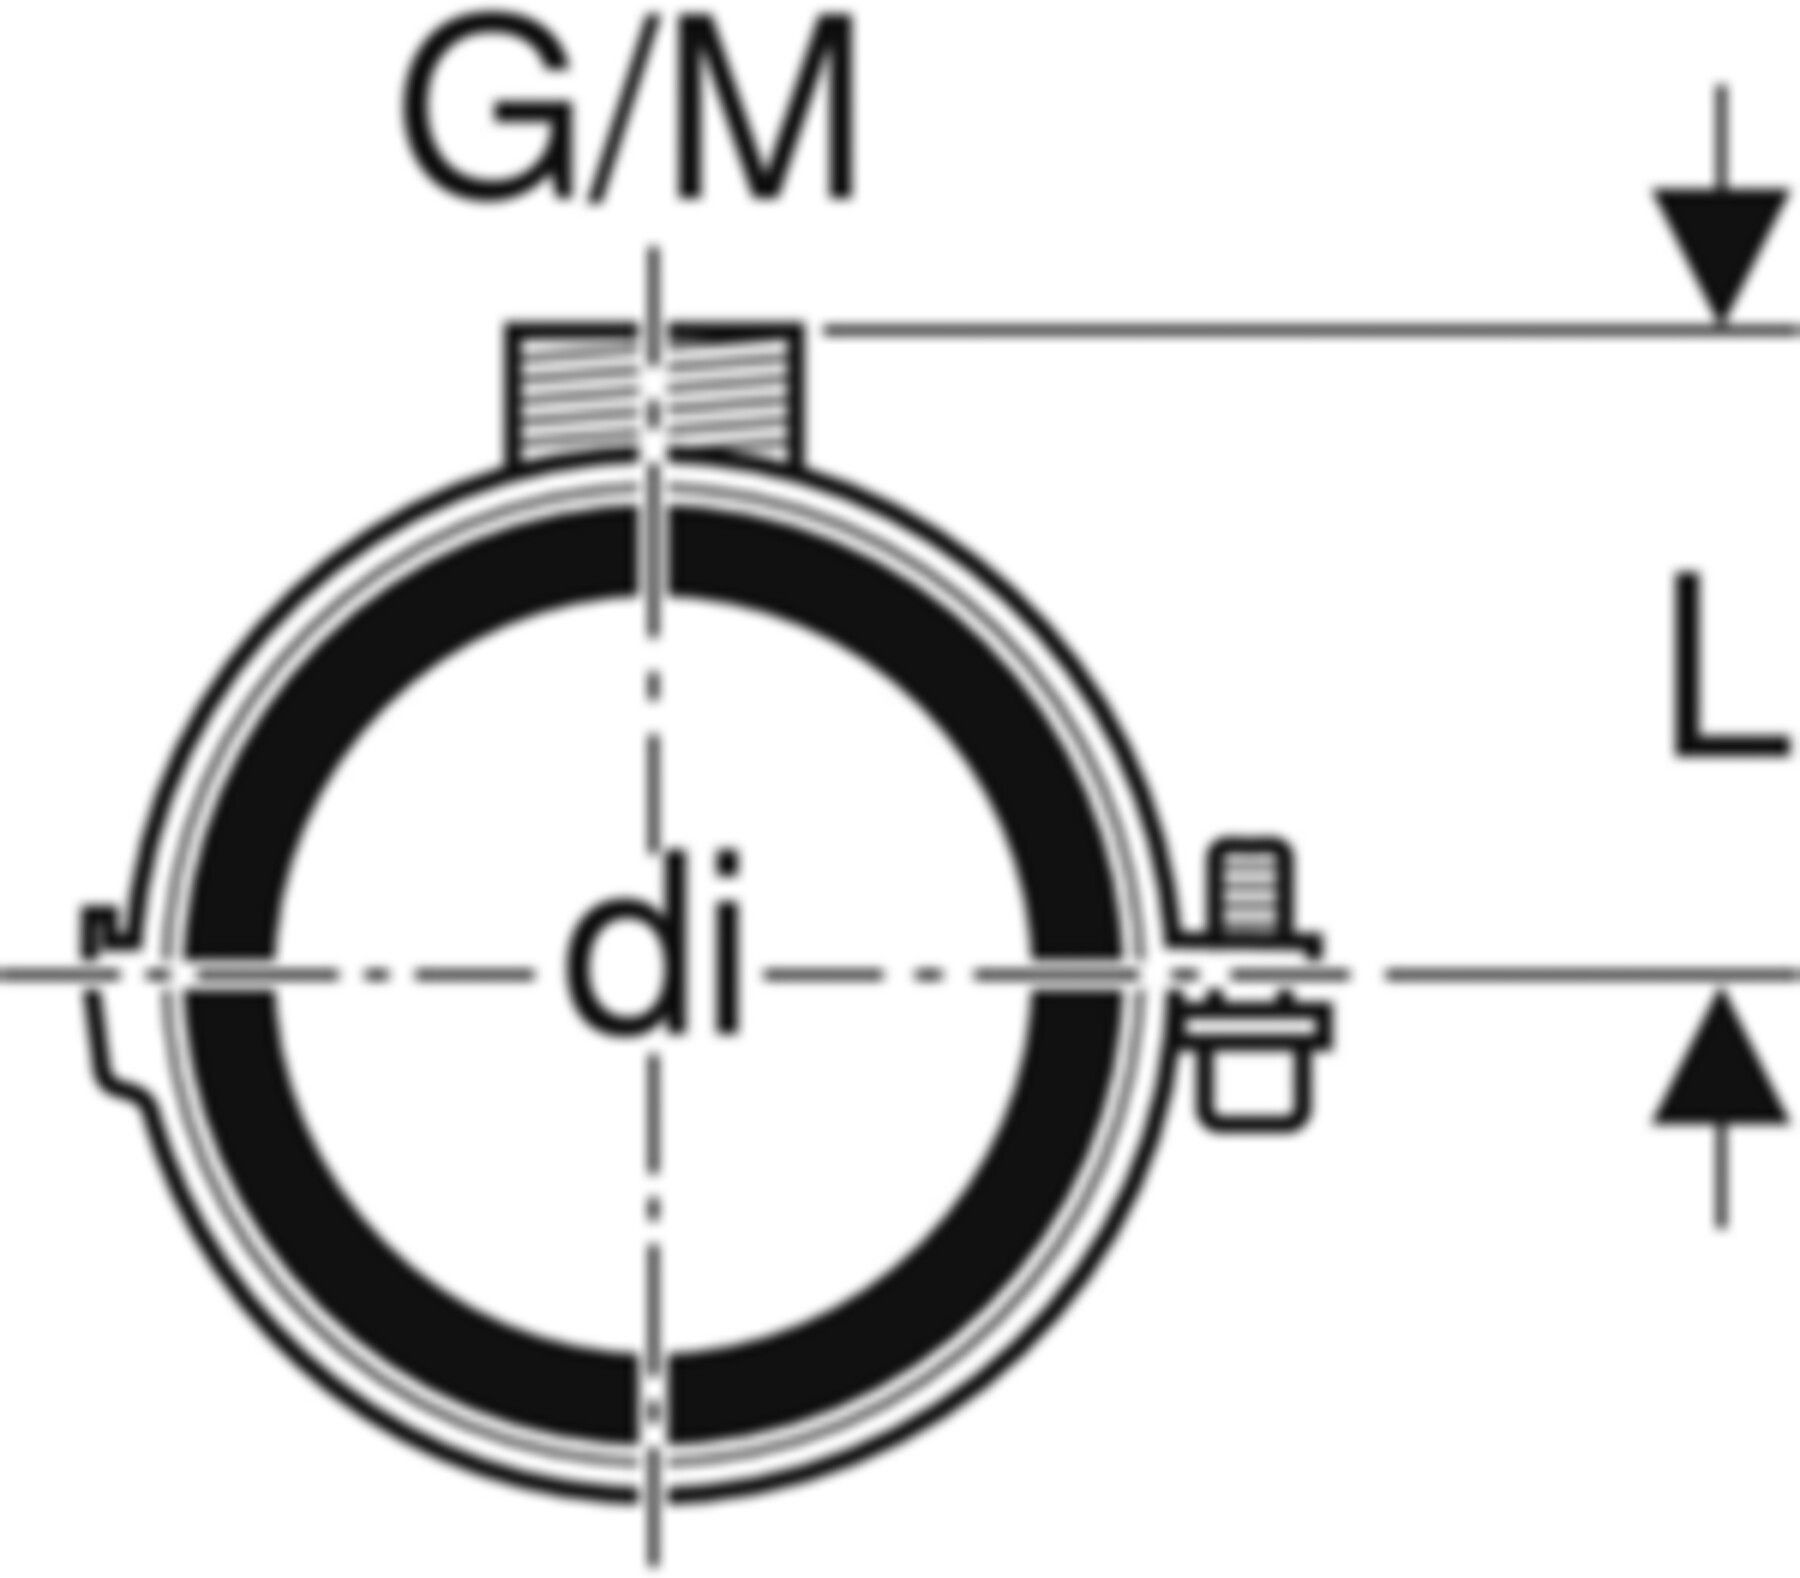 Rohrschelle mit Dämmeinlage d 56mm G/M 1/2"/M10 305.812.26.1 - Geberit-PE-Formstücke